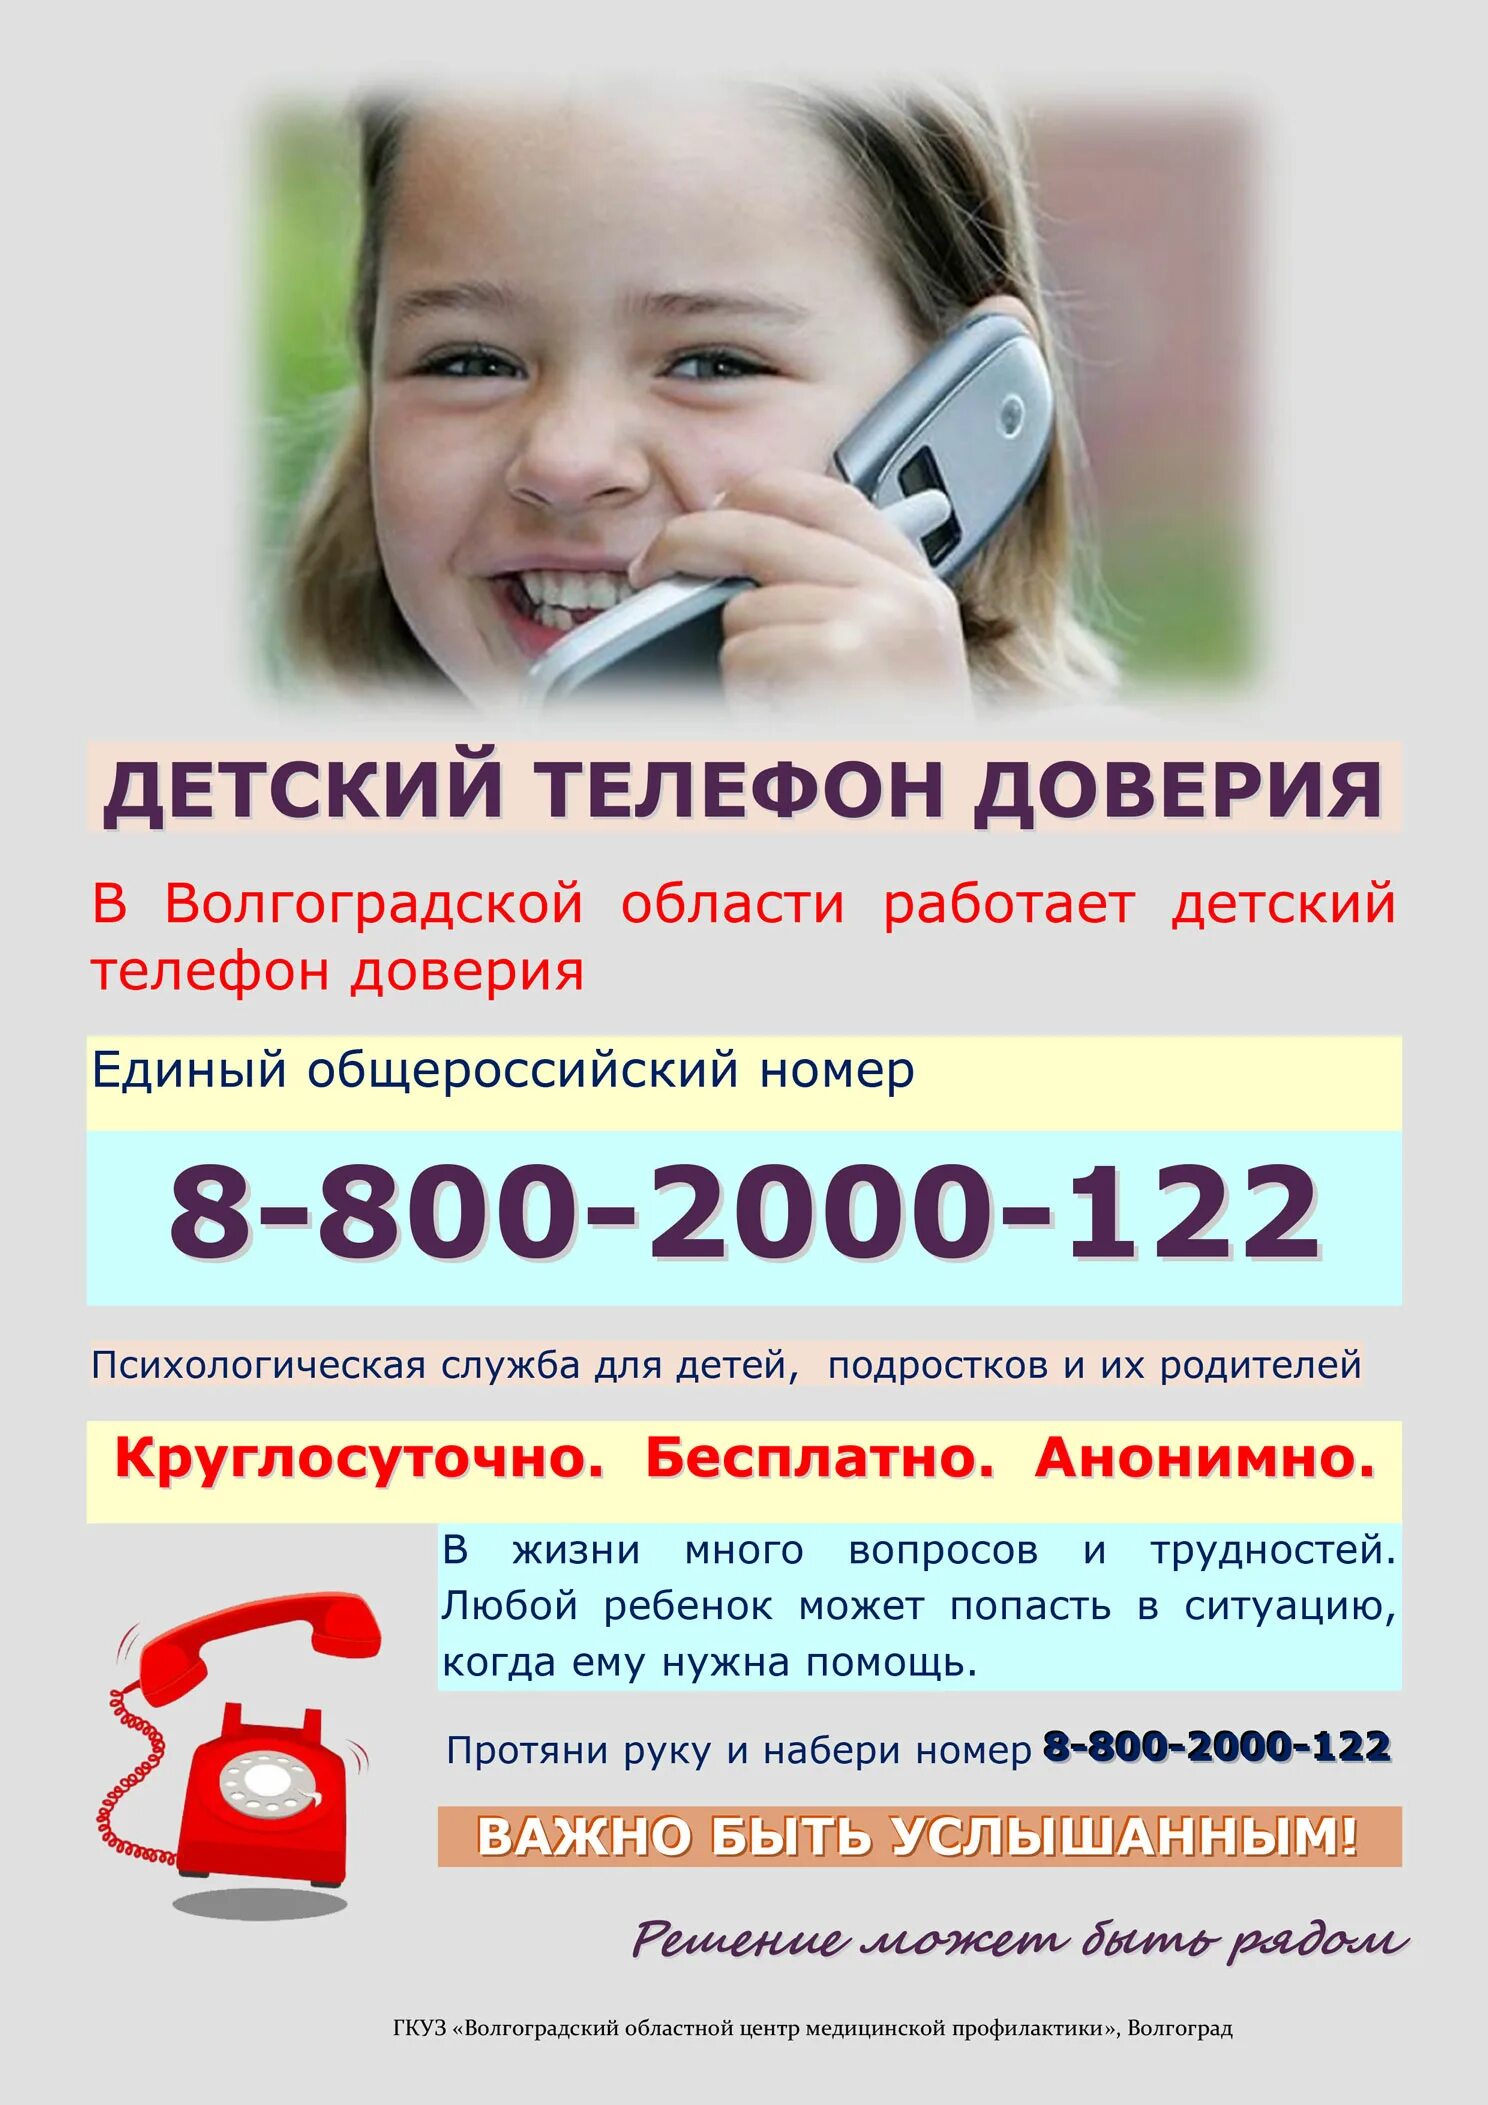 Бесплатные номера для детей. Телефон доверия. Детский телефон доверия. Телефон доверия для детей подростков и их родителей. Служба детского телефона доверия.